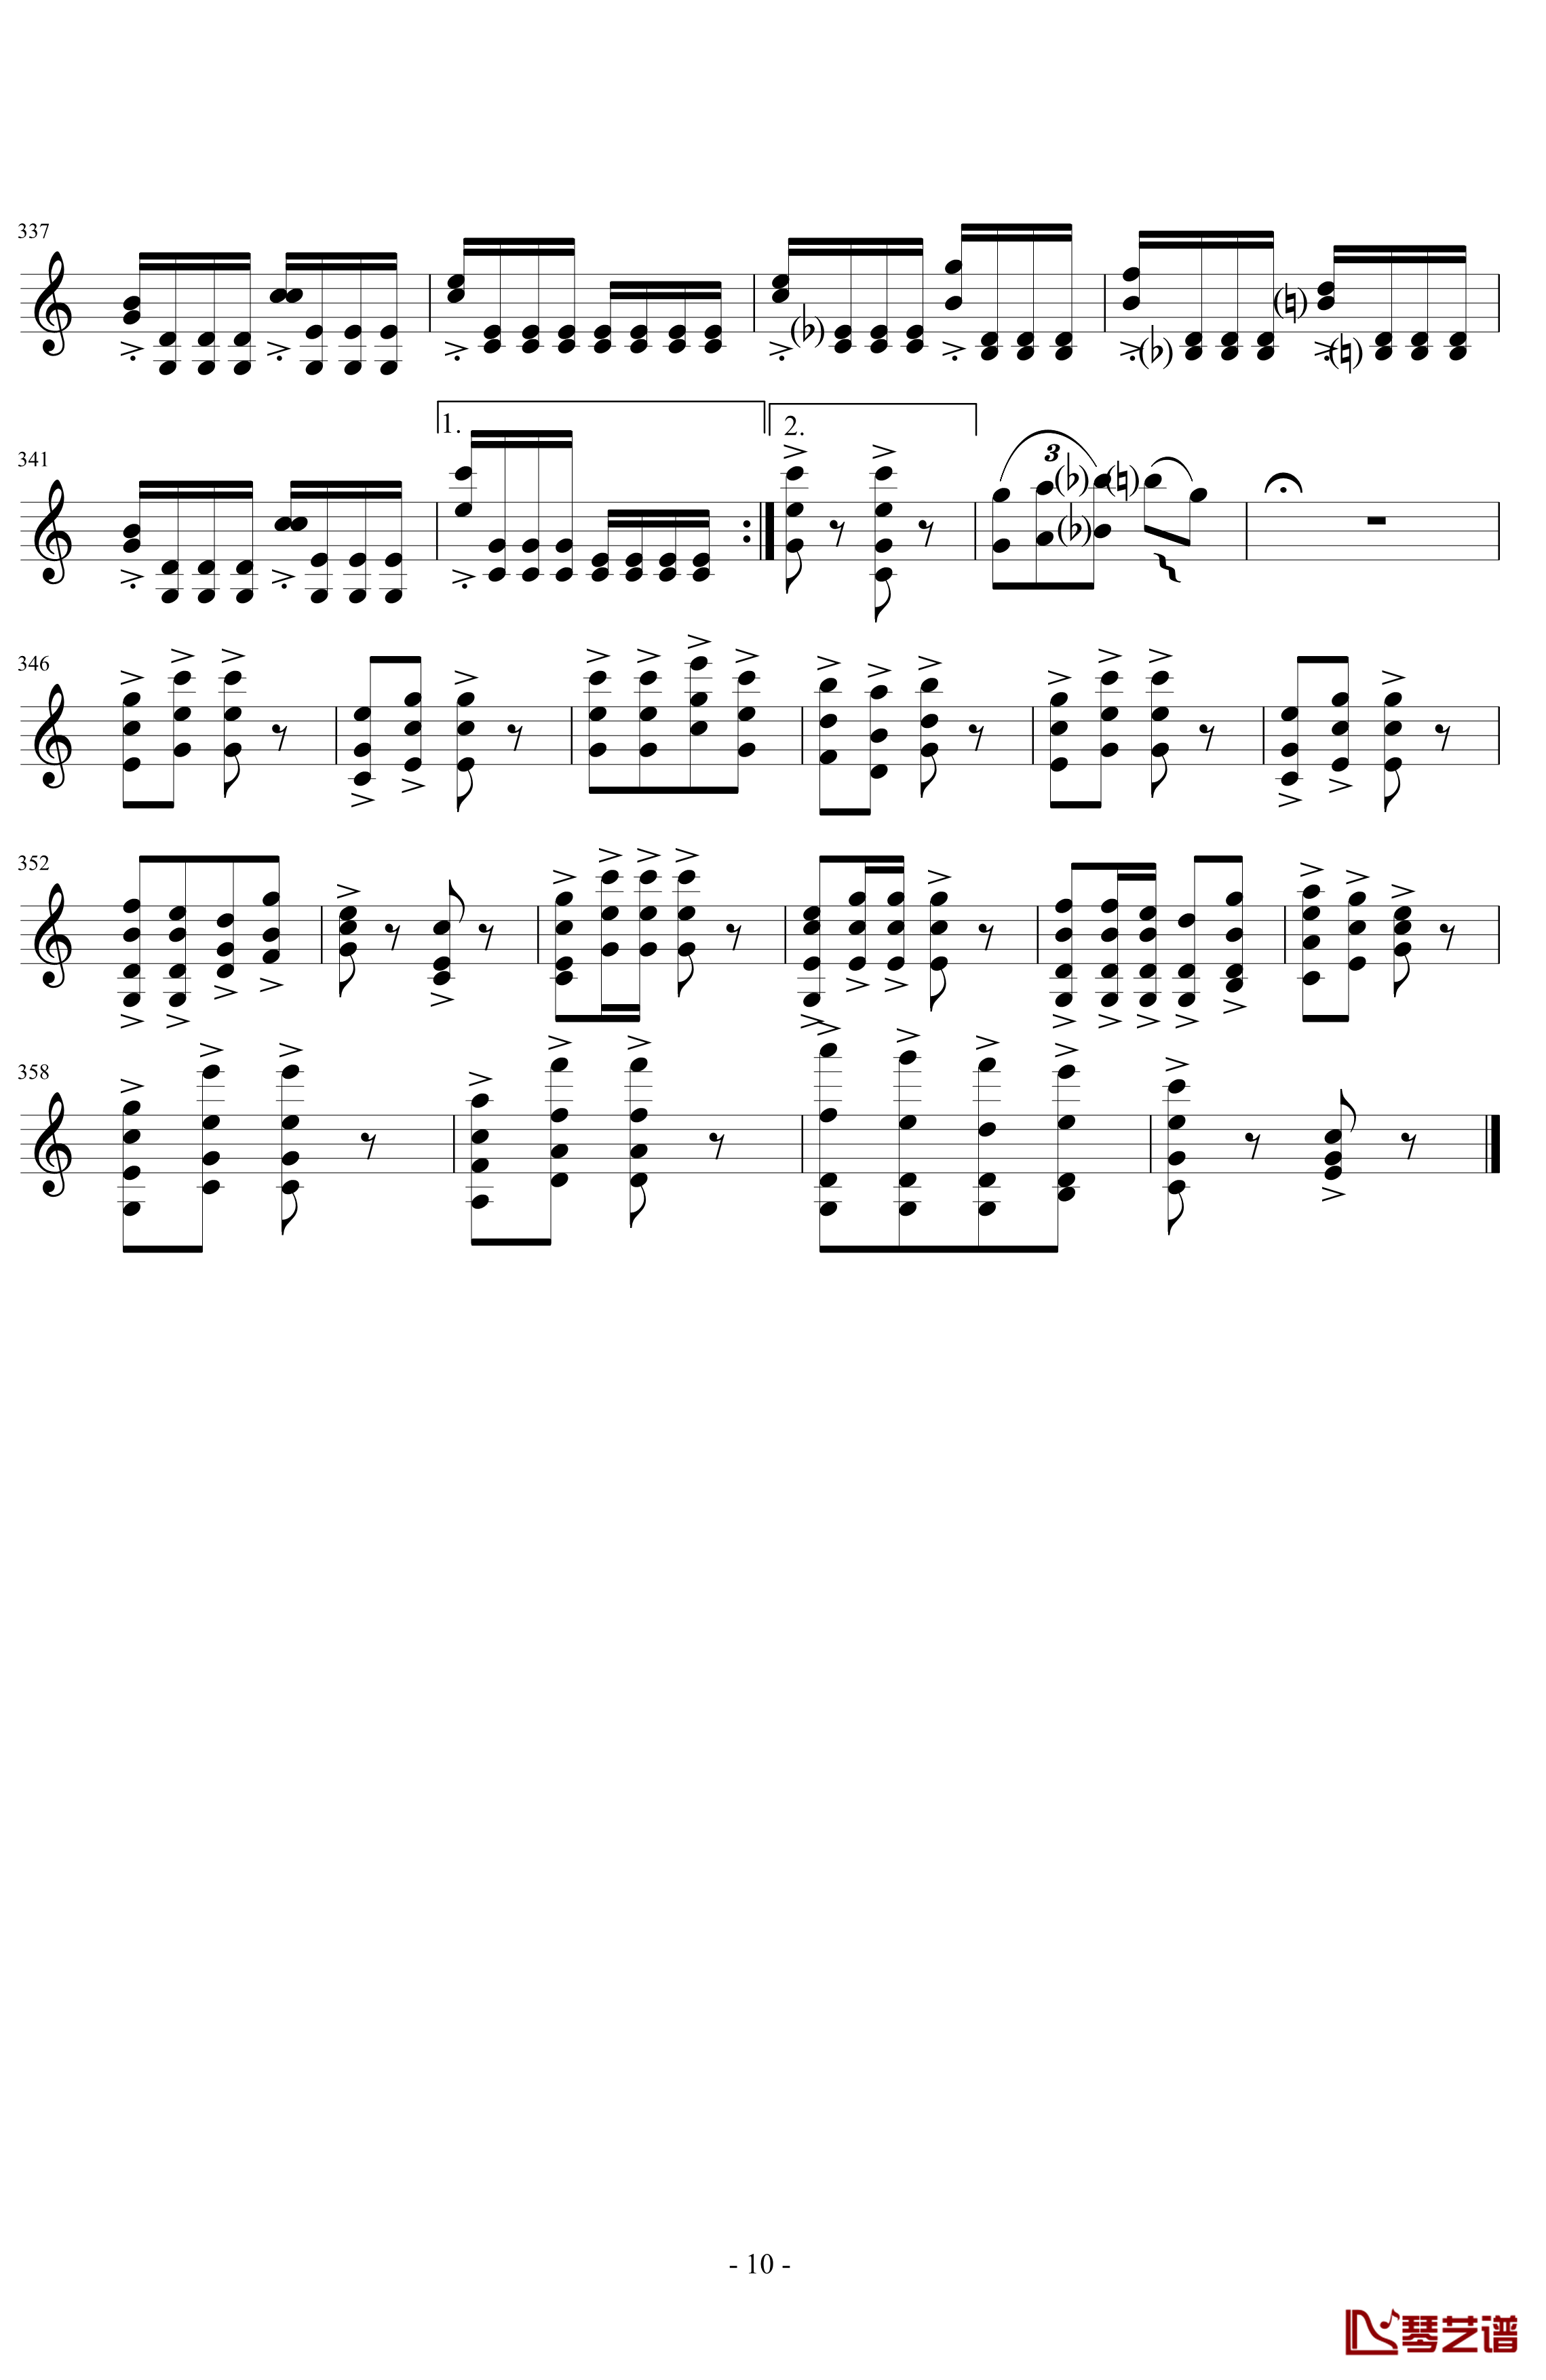 莫扎特主题炫技变奏曲钢琴谱-小提琴版-莫扎特10